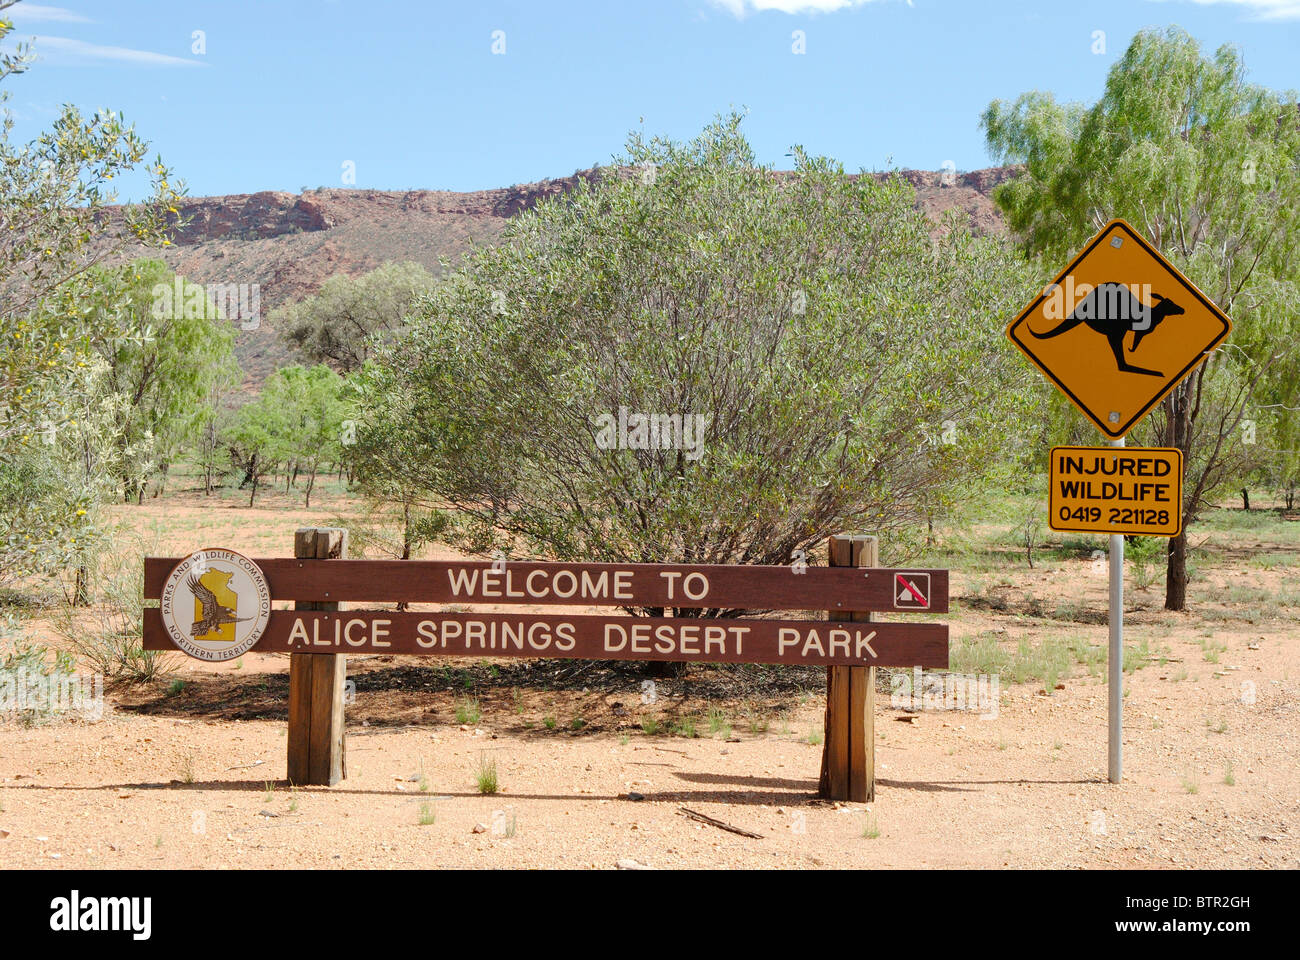 L'Australie, Alice Springs Desert Park Entrance sign Banque D'Images